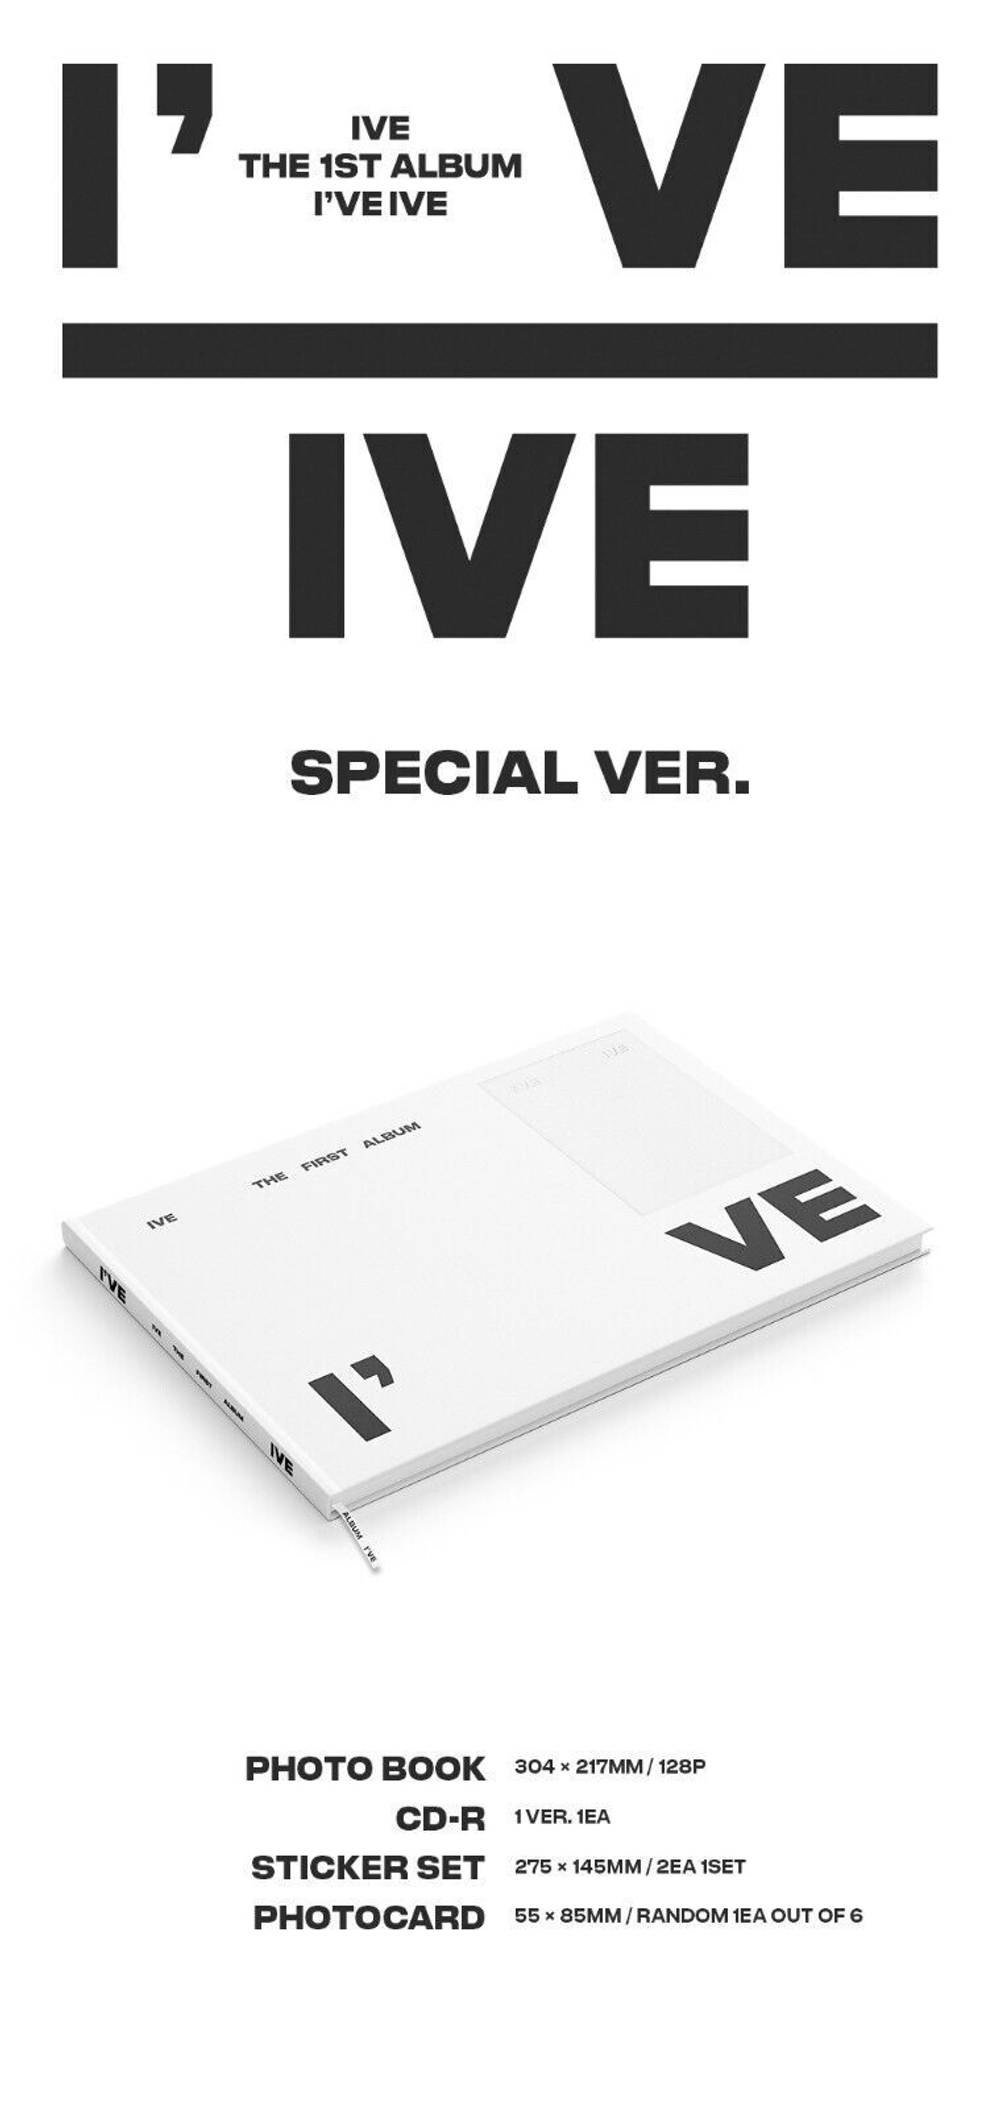 IVE - I've (Special Ver.)